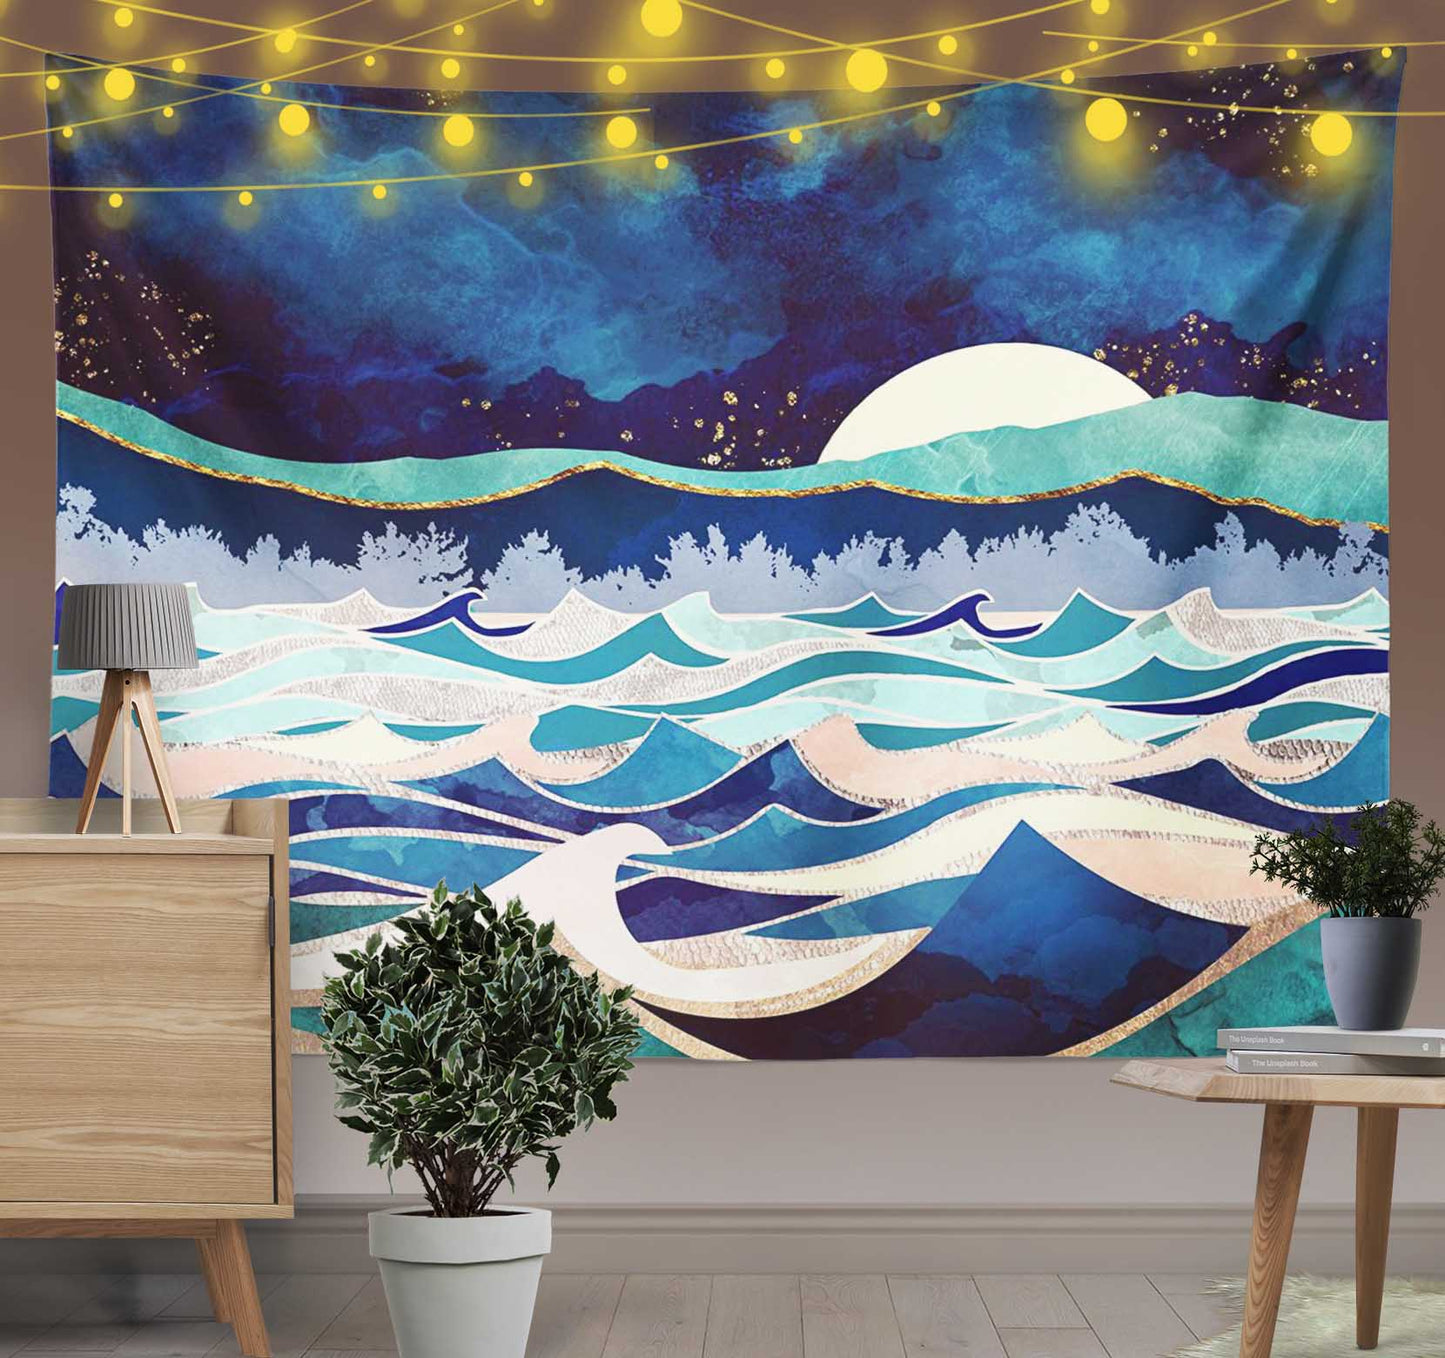 Moonlit Ocean Tapestry